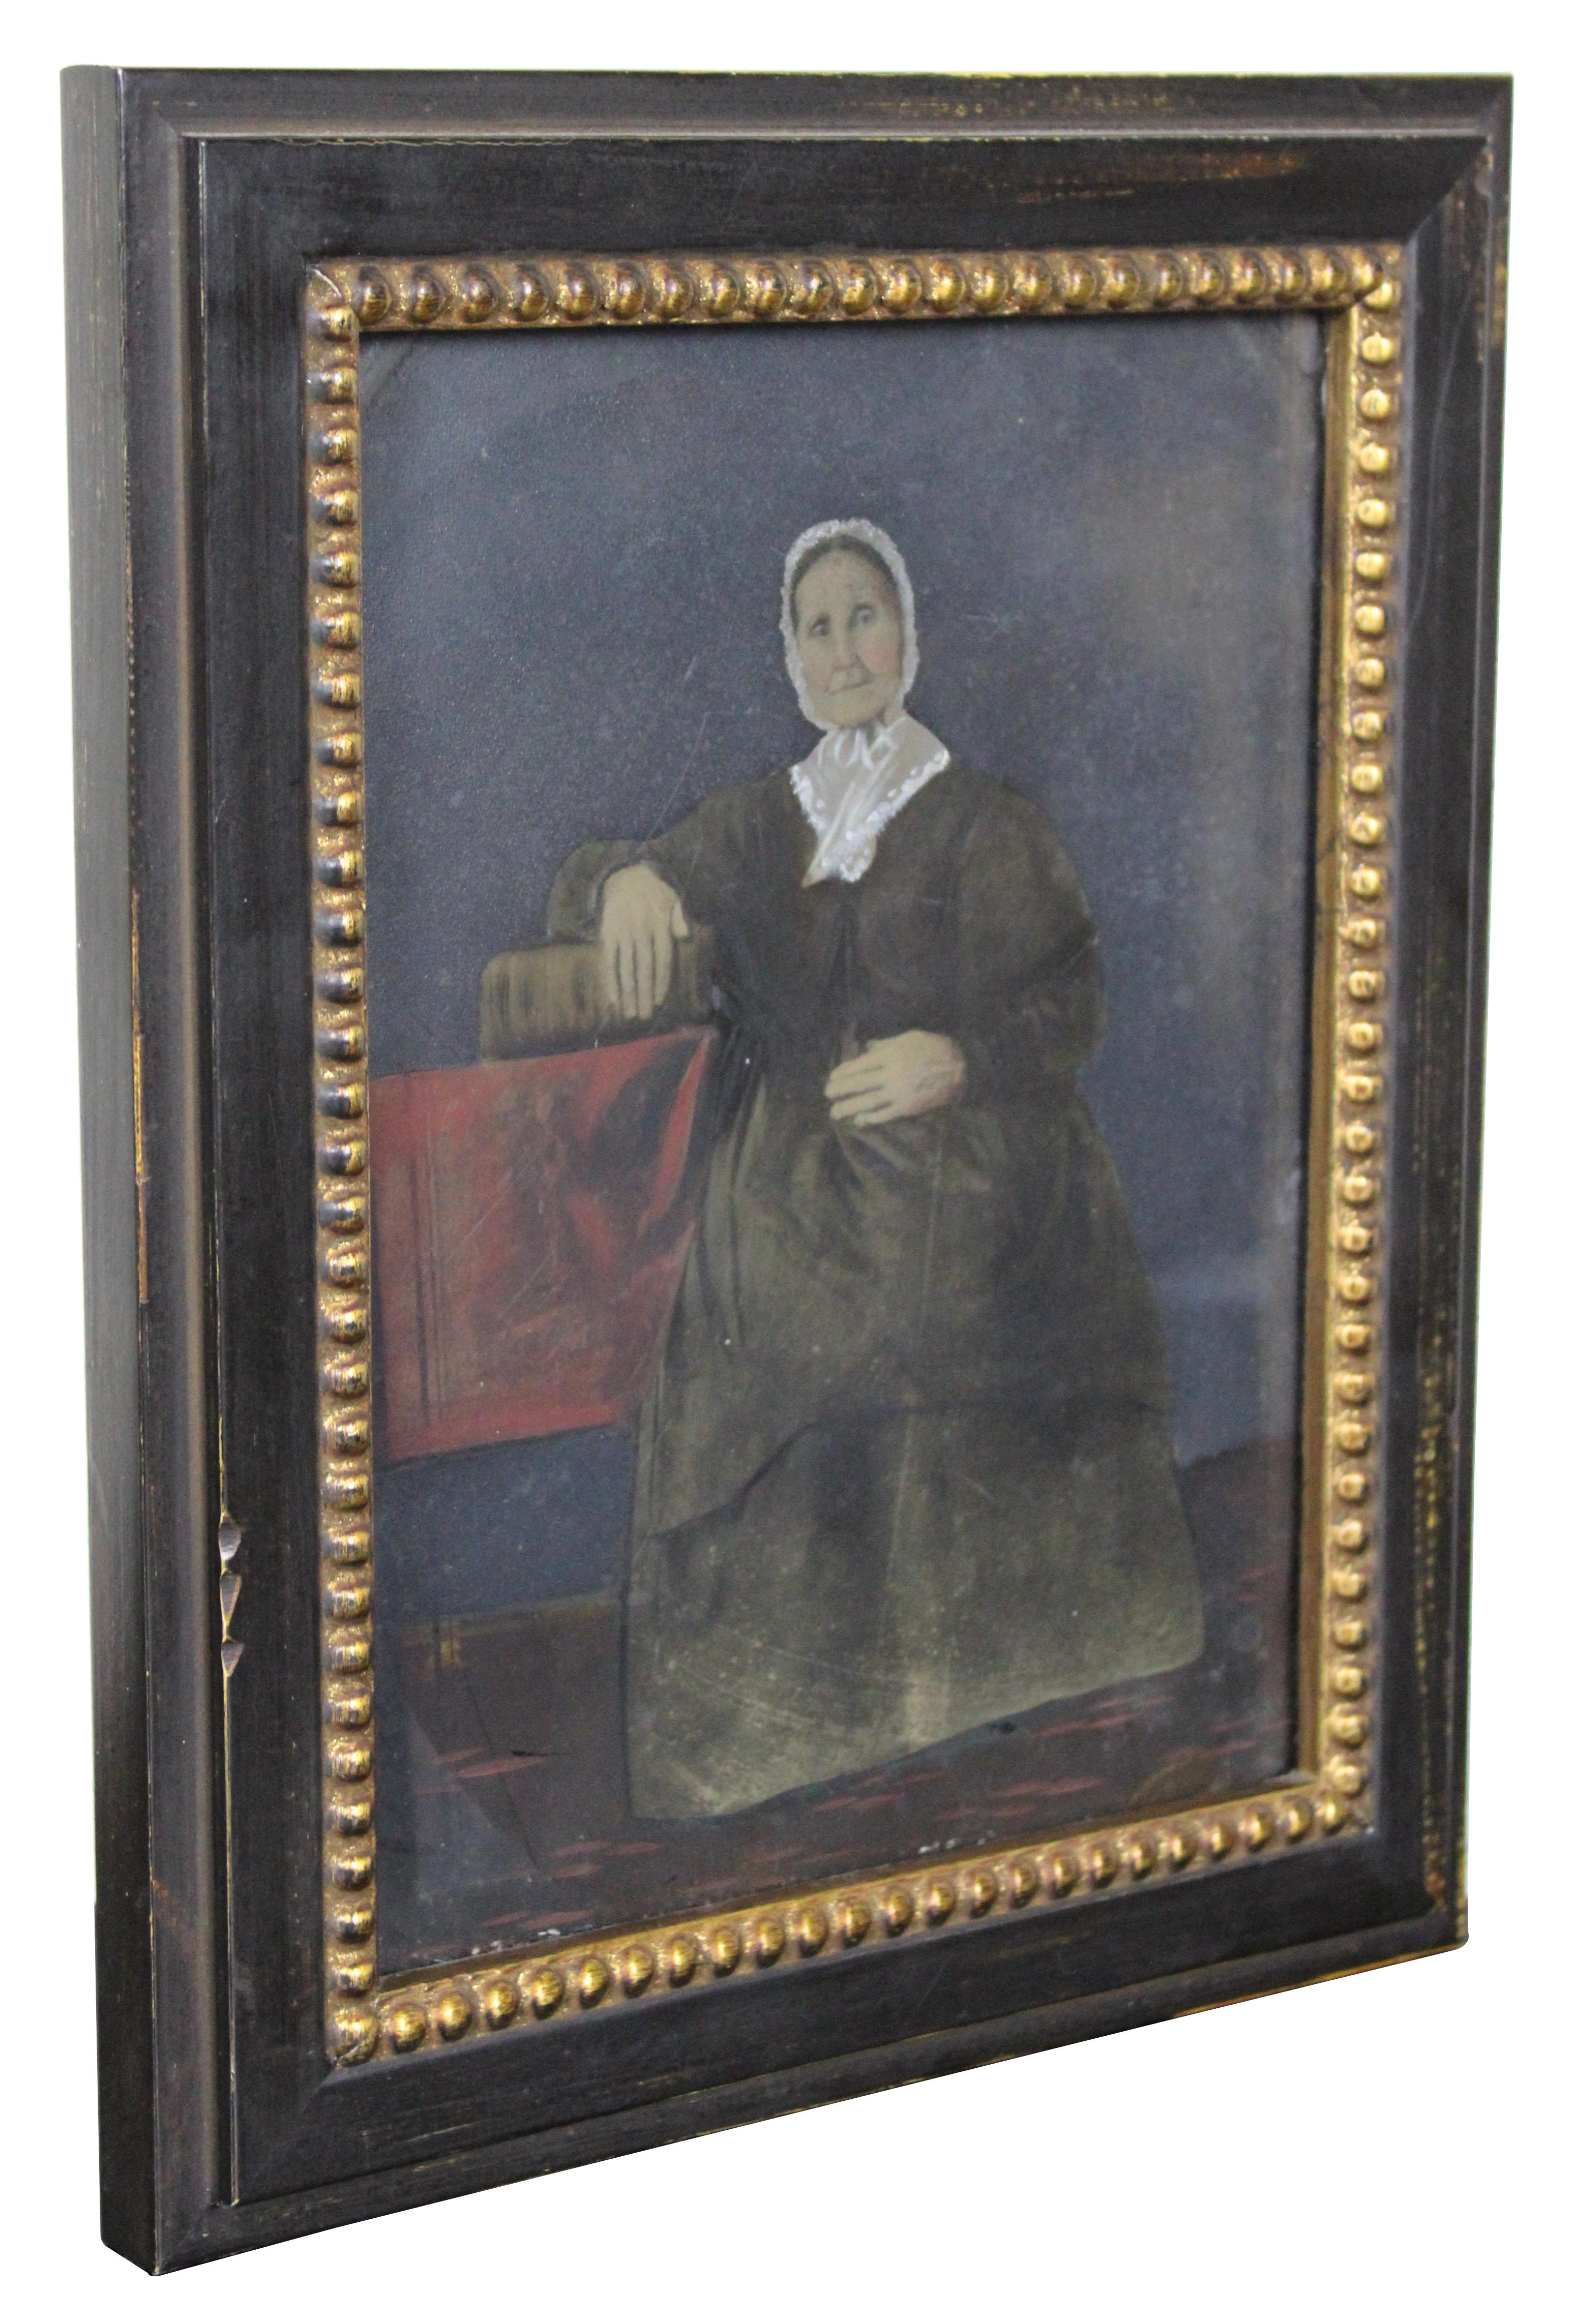 Belle peinture à l'huile ancienne sur étain. Peinture portrait d'une femme âgée en noir avec un bonnet fichu en dentelle, assise à une table, la main sur un livre.

Mesures : 8.5